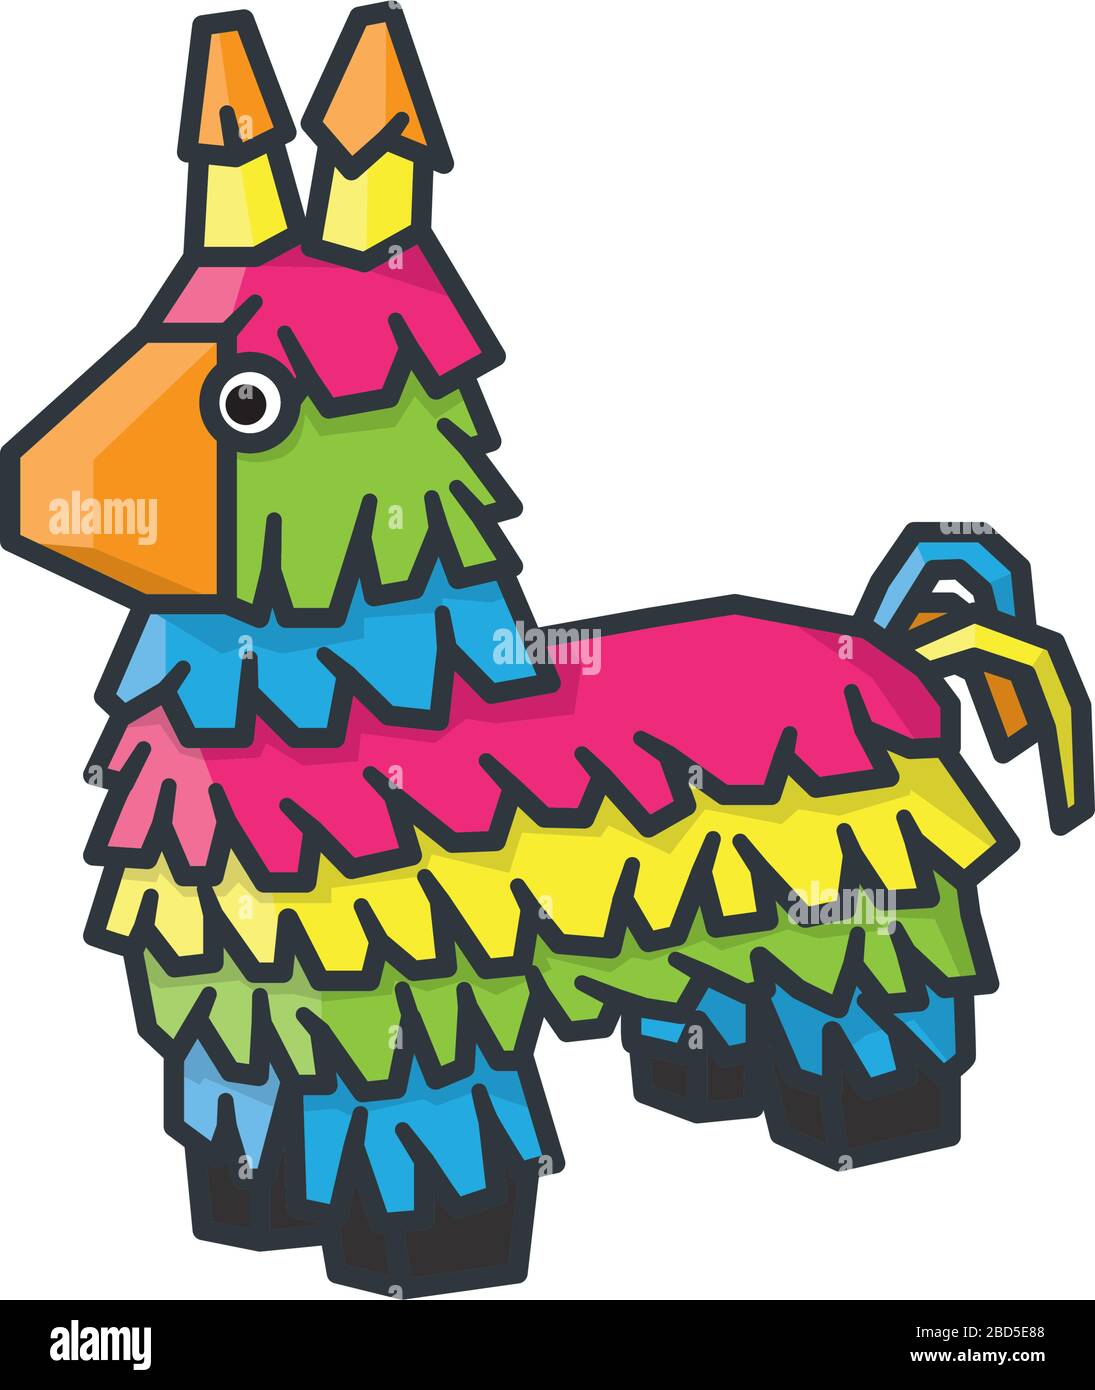 Illustration vectorielle isolée de la bande dessinée de Piñata Donkey pour la journée de Pinata le 18 avril. Symbole de couleur de célébration mexicaine. Illustration de Vecteur